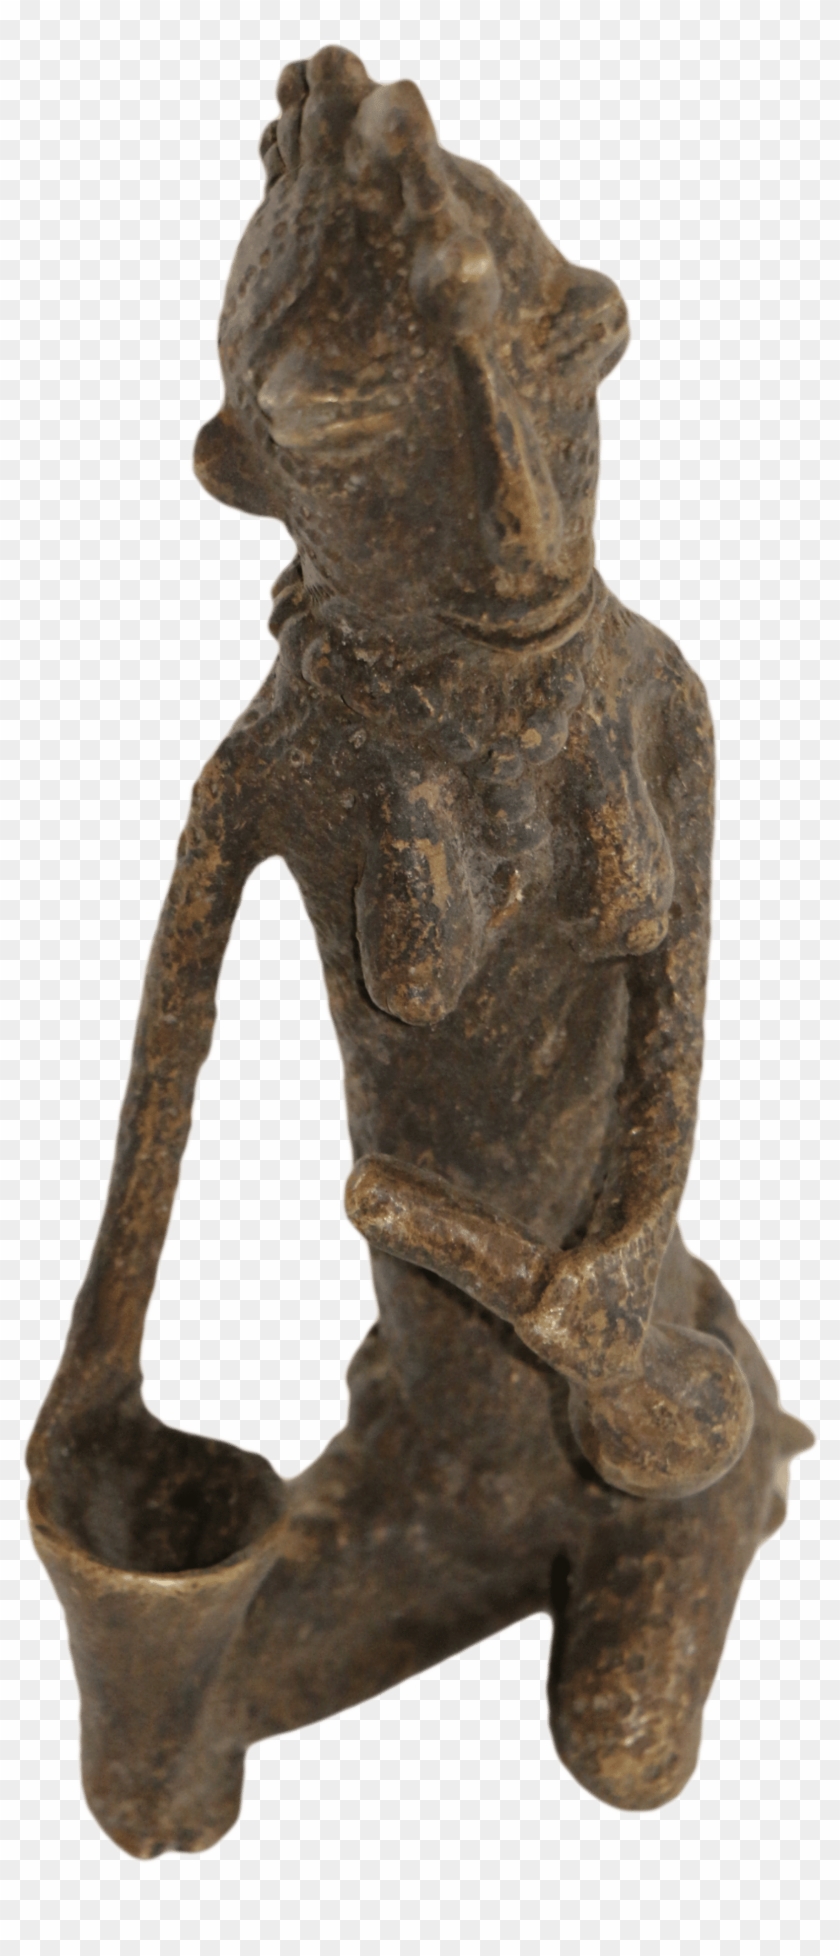 African-arte001 - Bronze Sculpture Clipart